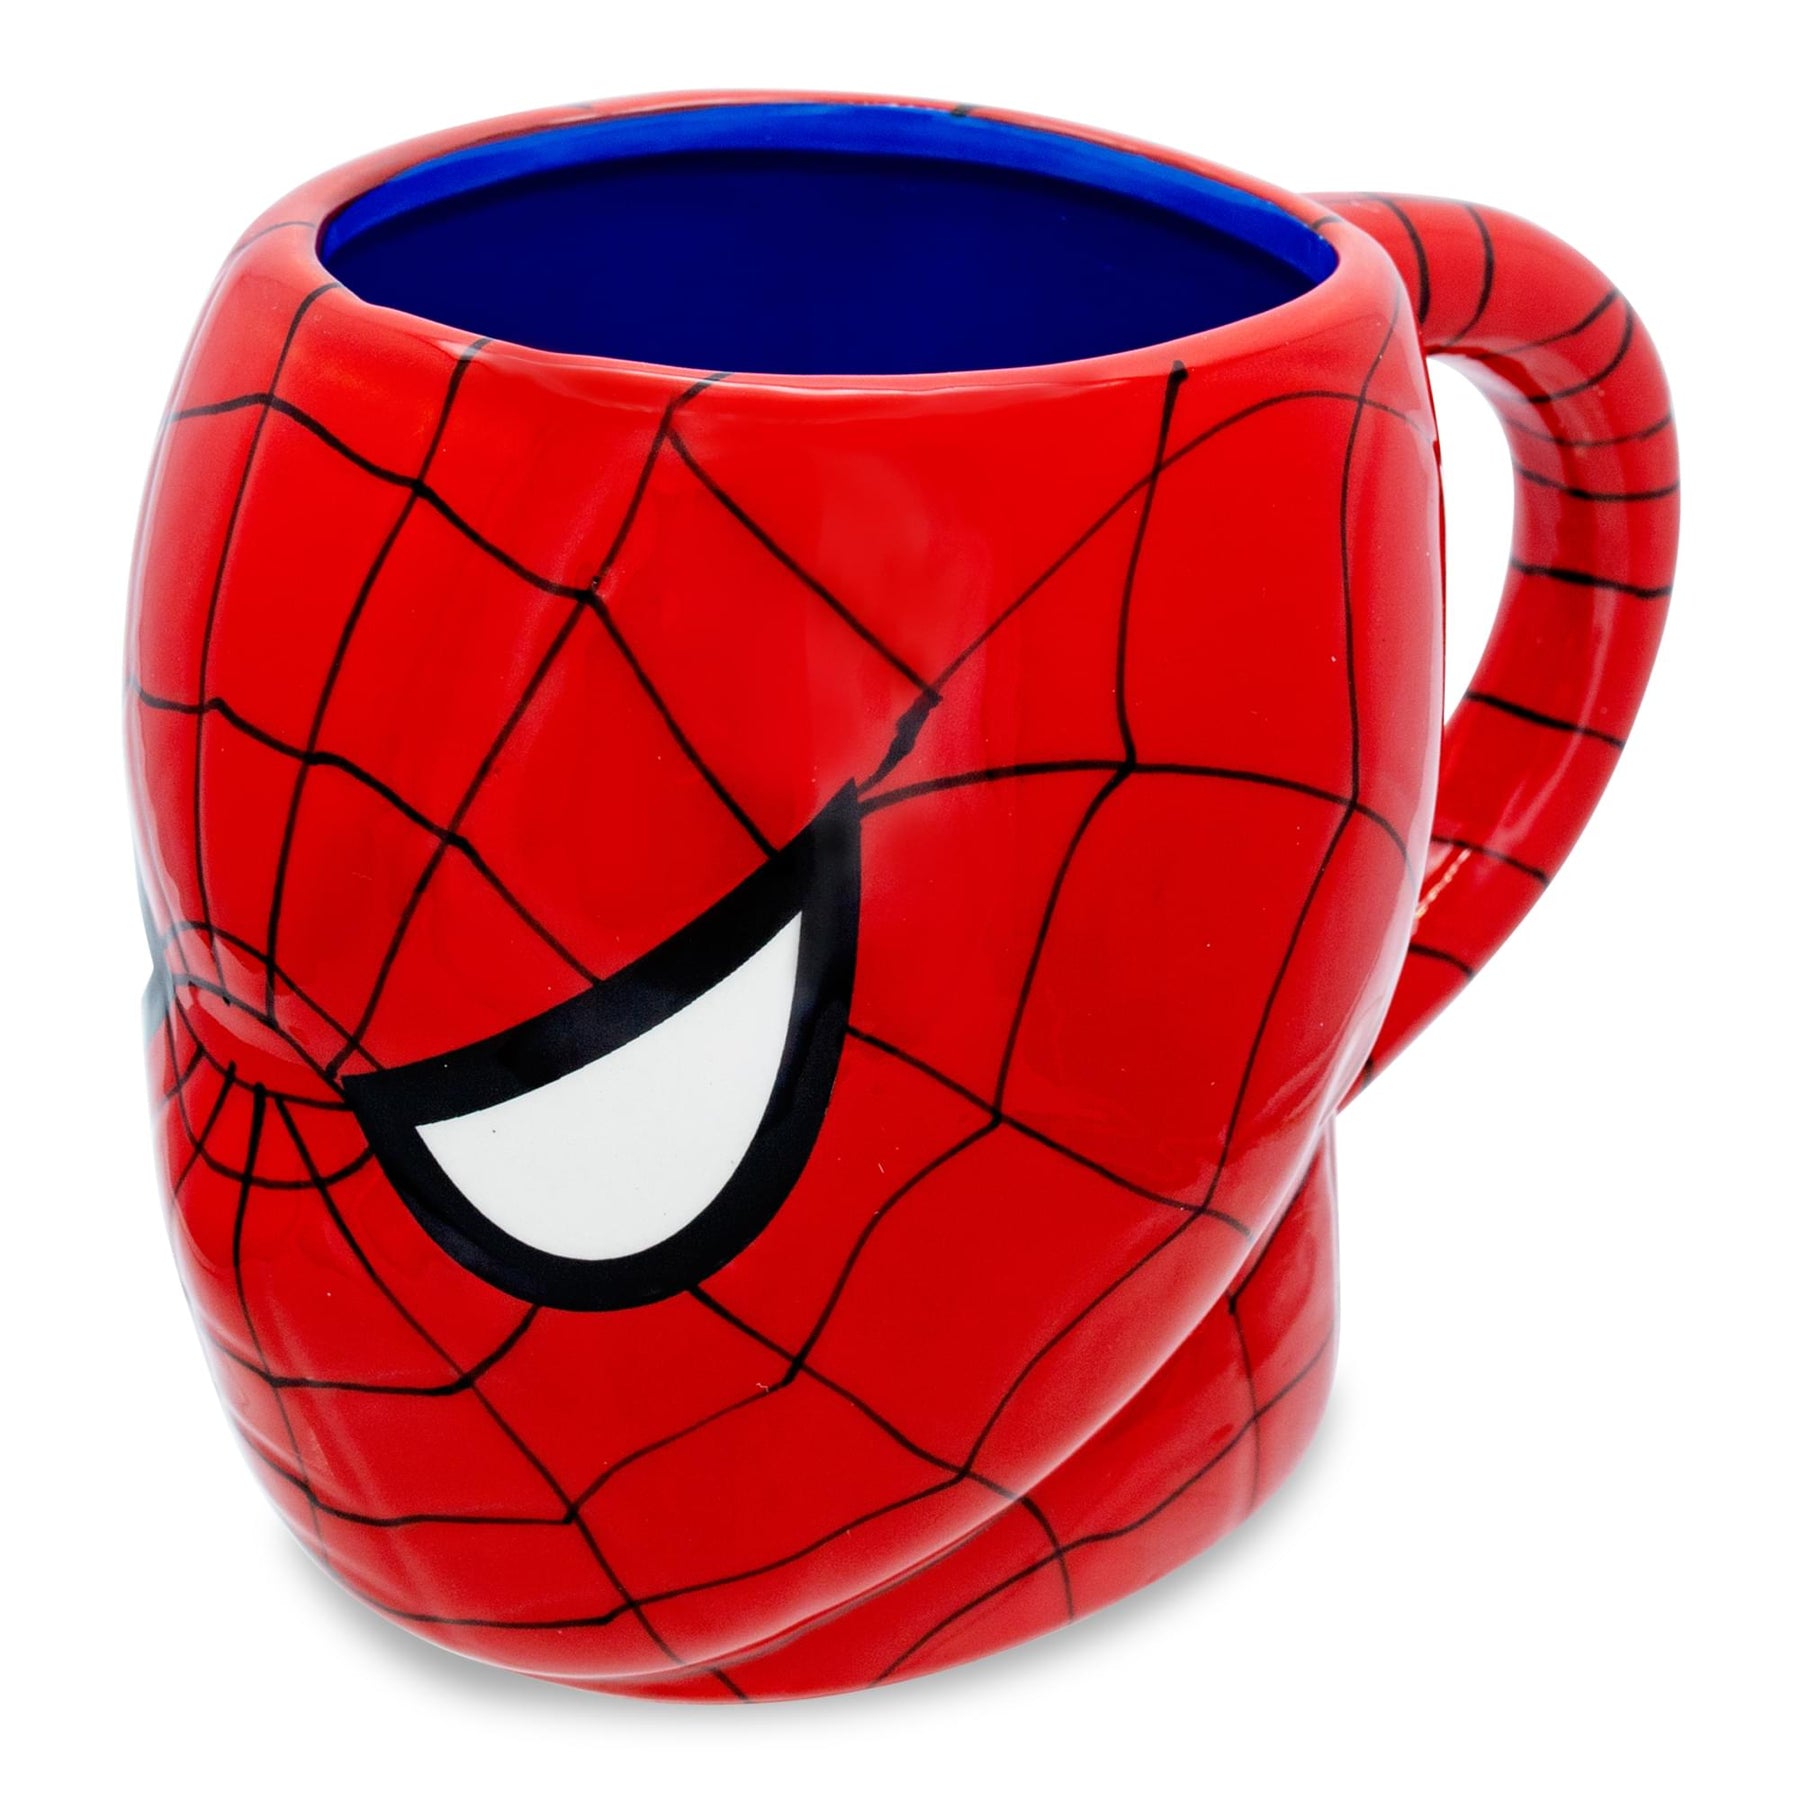 Mug Spiderman en céramique - Marvel